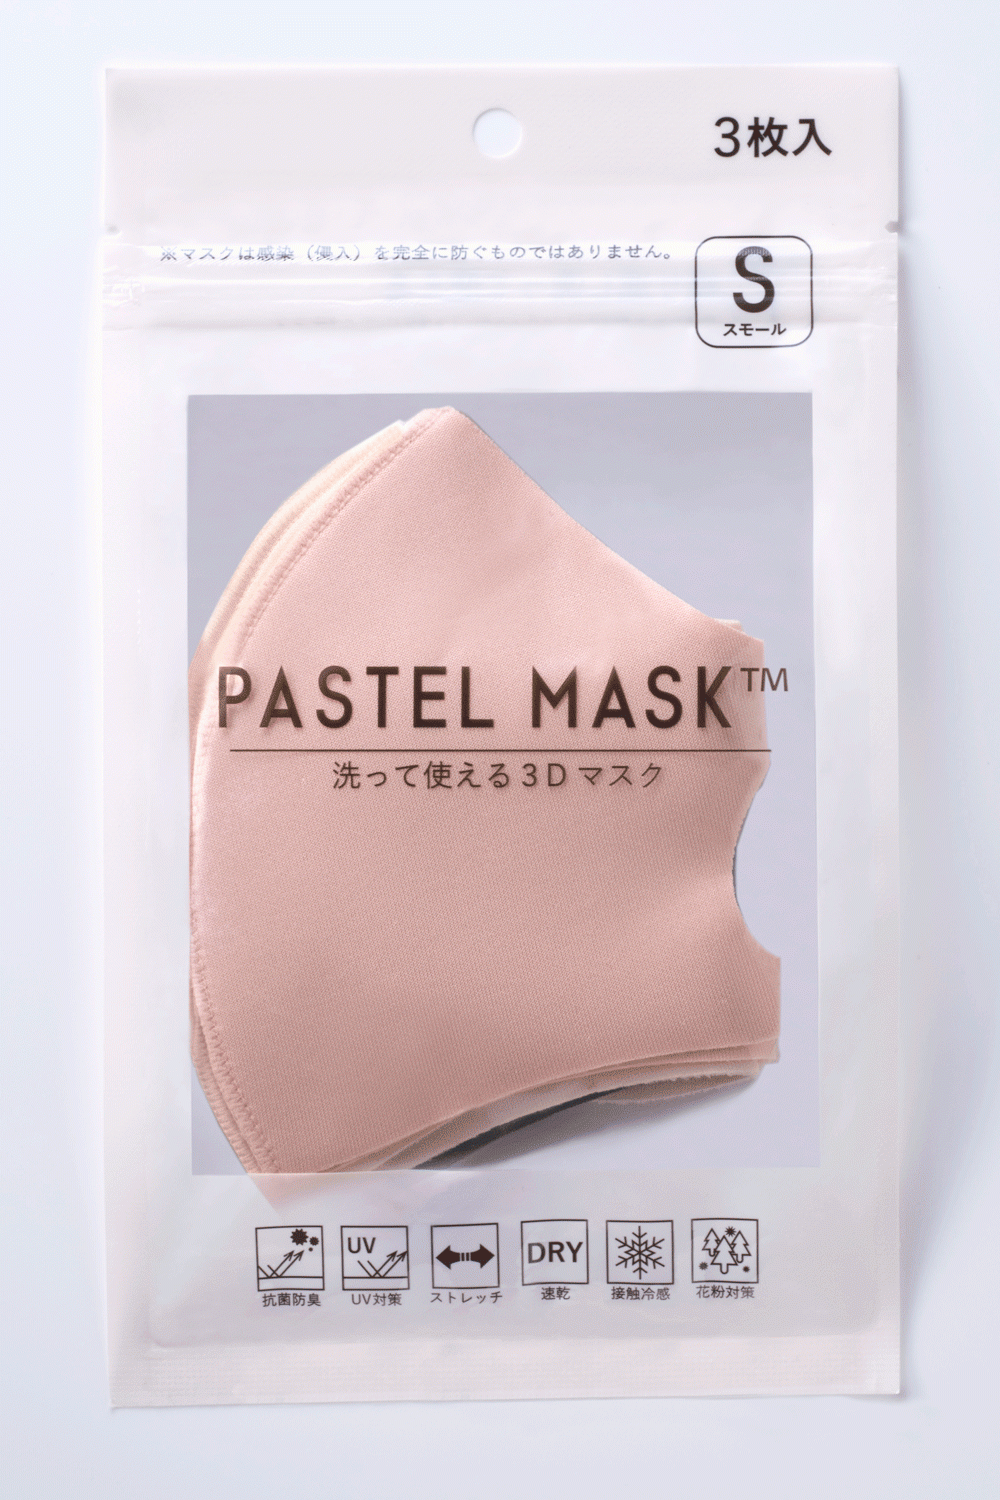 コロナ禍に発売5か月で累計販売4 000万枚突破 洗えるマスク Pastel Mask パステルマスク 豊富なカラーとサイズ ３d構造の快適さで大ヒット 産経ニュース